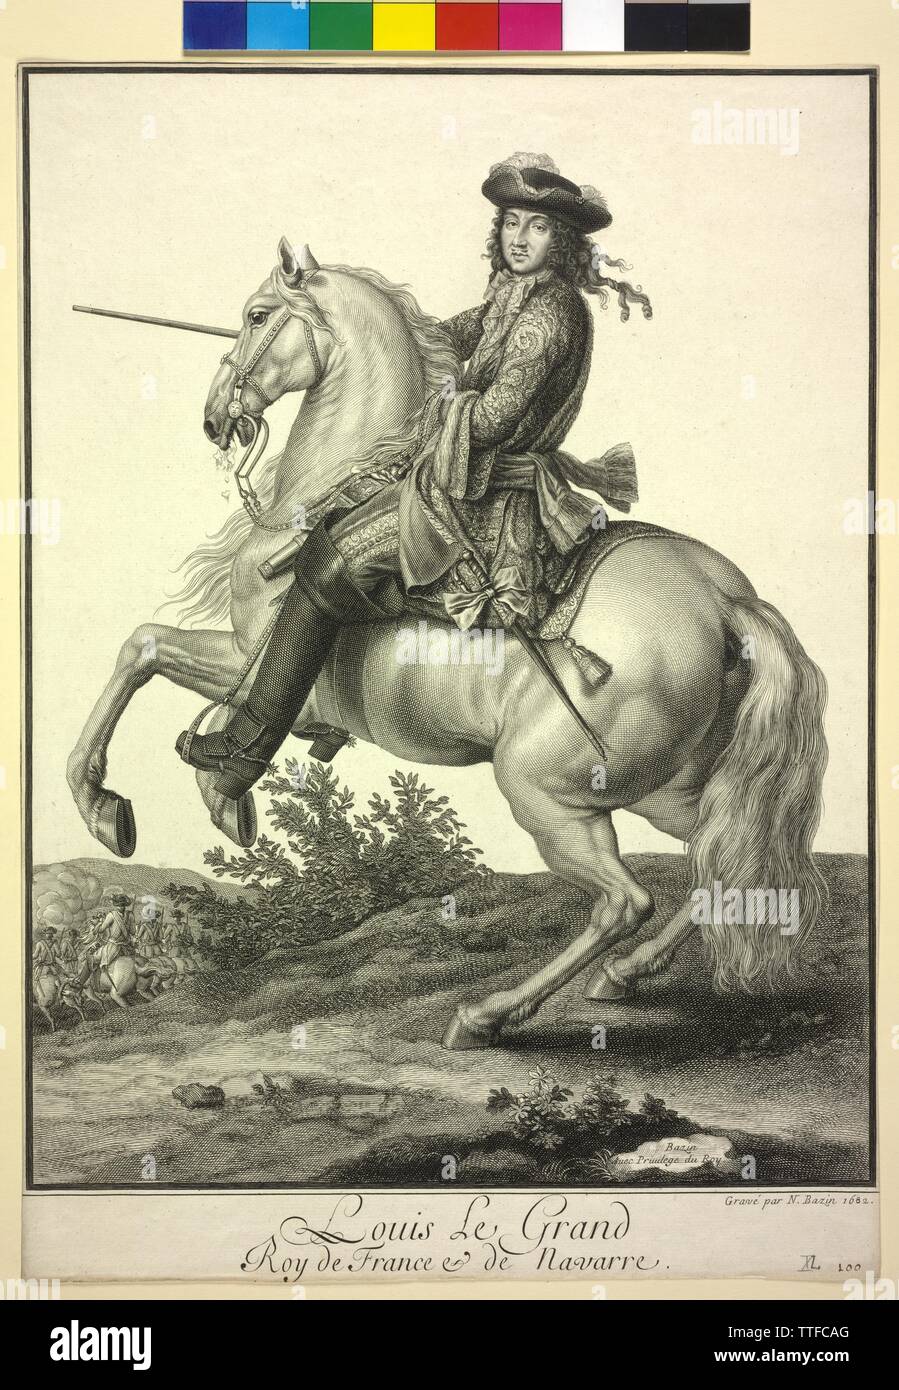 Louis XIV., König von Frankreich, Reiter Bild, Gravur von Nicolas Bazin, Additional-Rights - Clearance-Info - Not-Available Stockfoto